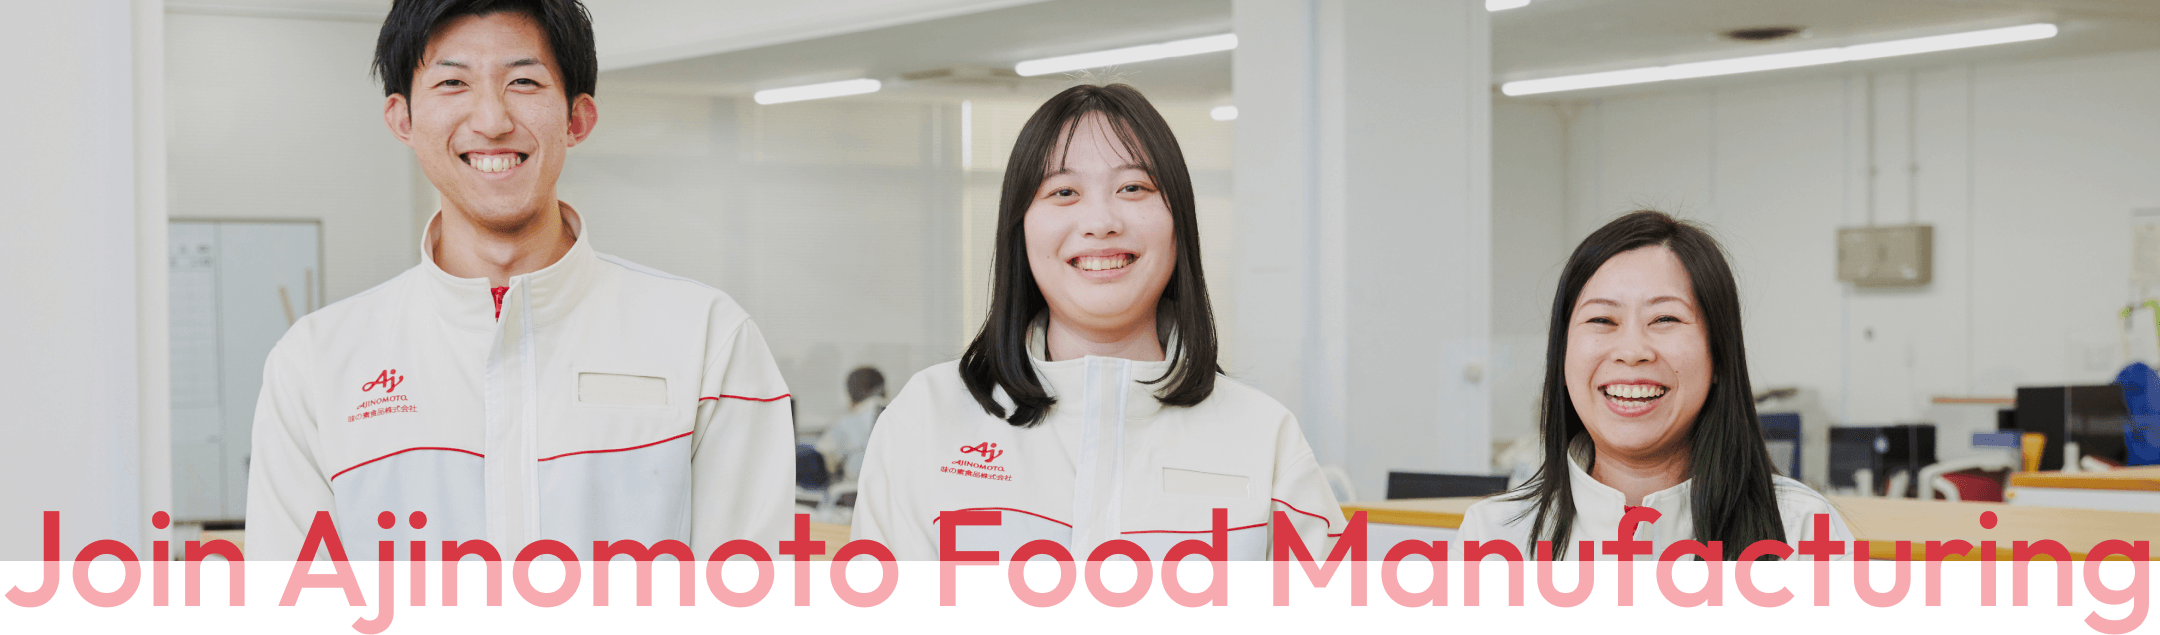 Join Ajinomoto Food Manufacturing